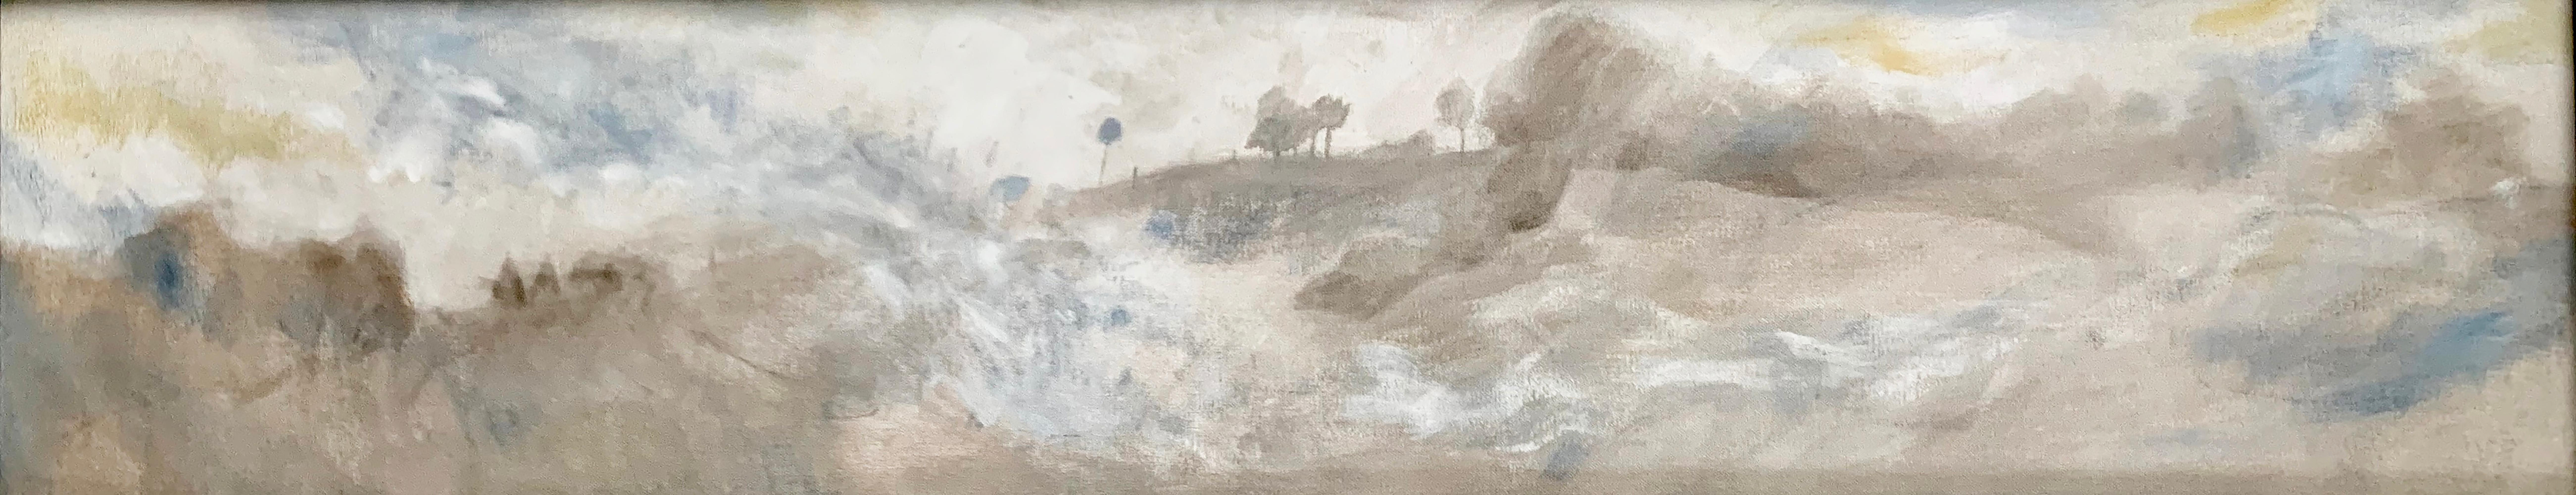 "Late Morning at Singeorz" des zeitgenössischen rumänischen Malers Marcel Lupse ist ein gerahmtes Ölgemälde, das eine ruhige siebenbürgische Landschaft in den späten Morgenstunden zeigt. Das Gemälde ist eines von vier in einer Serie, die dieselbe